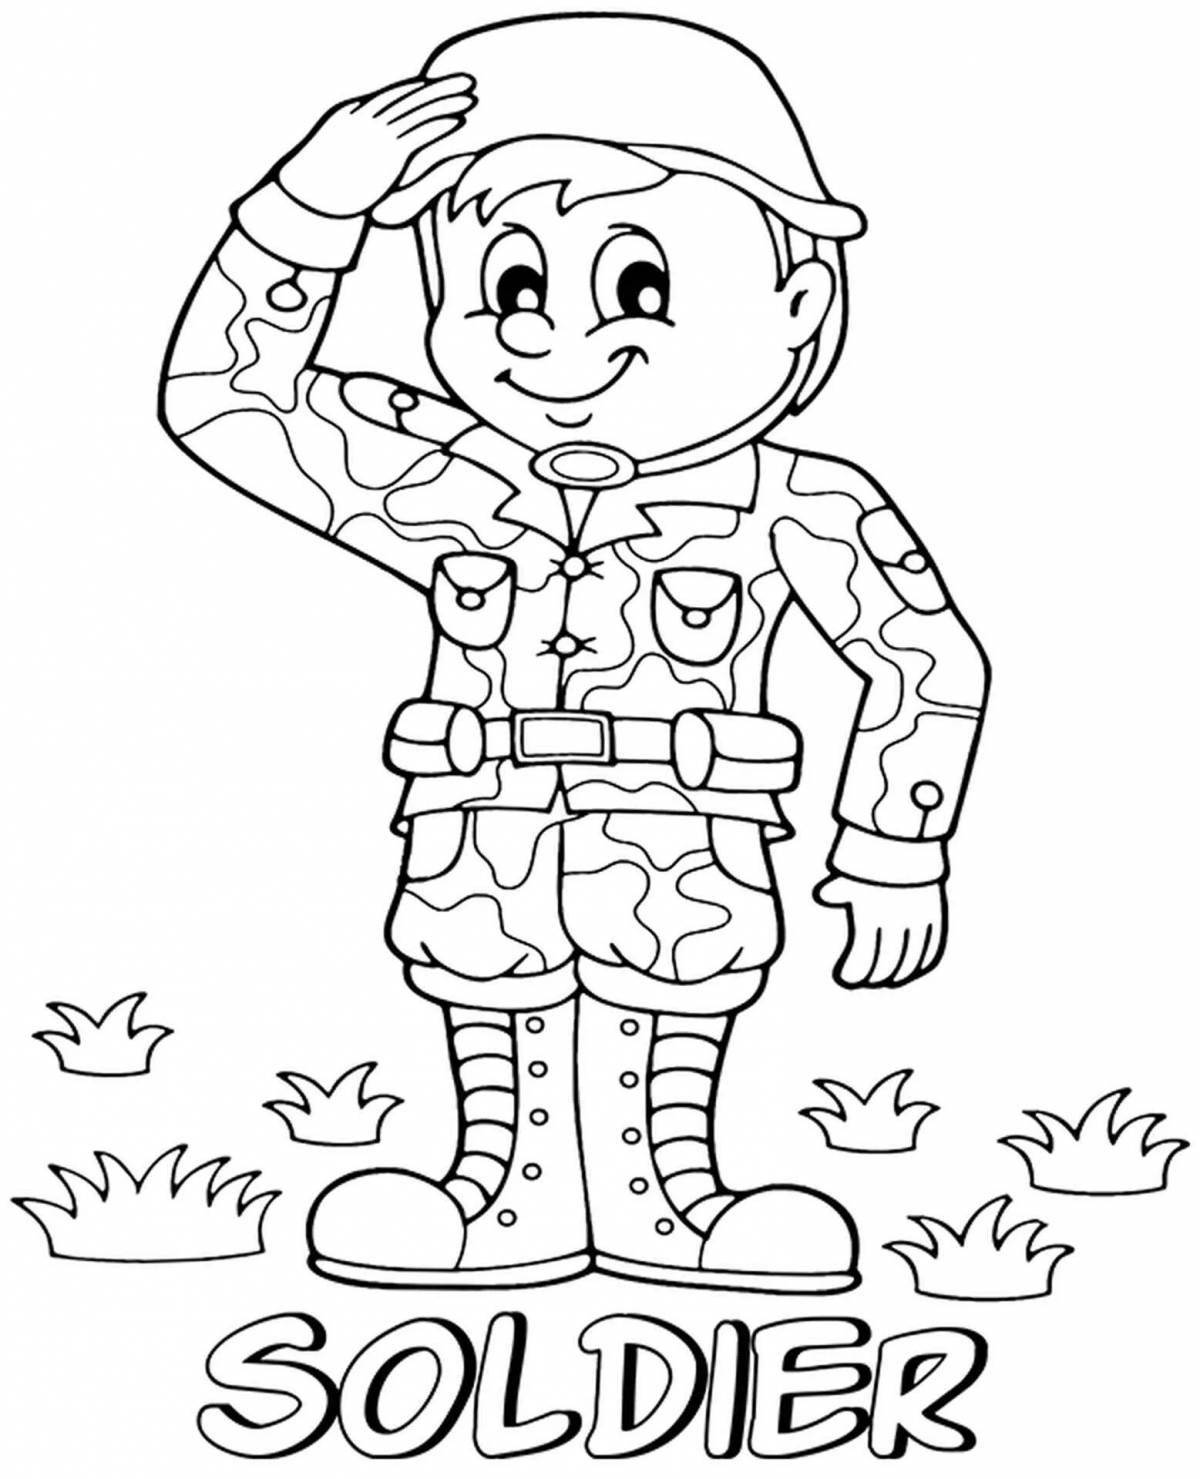 Увлекательная раскраска лица солдата для детей